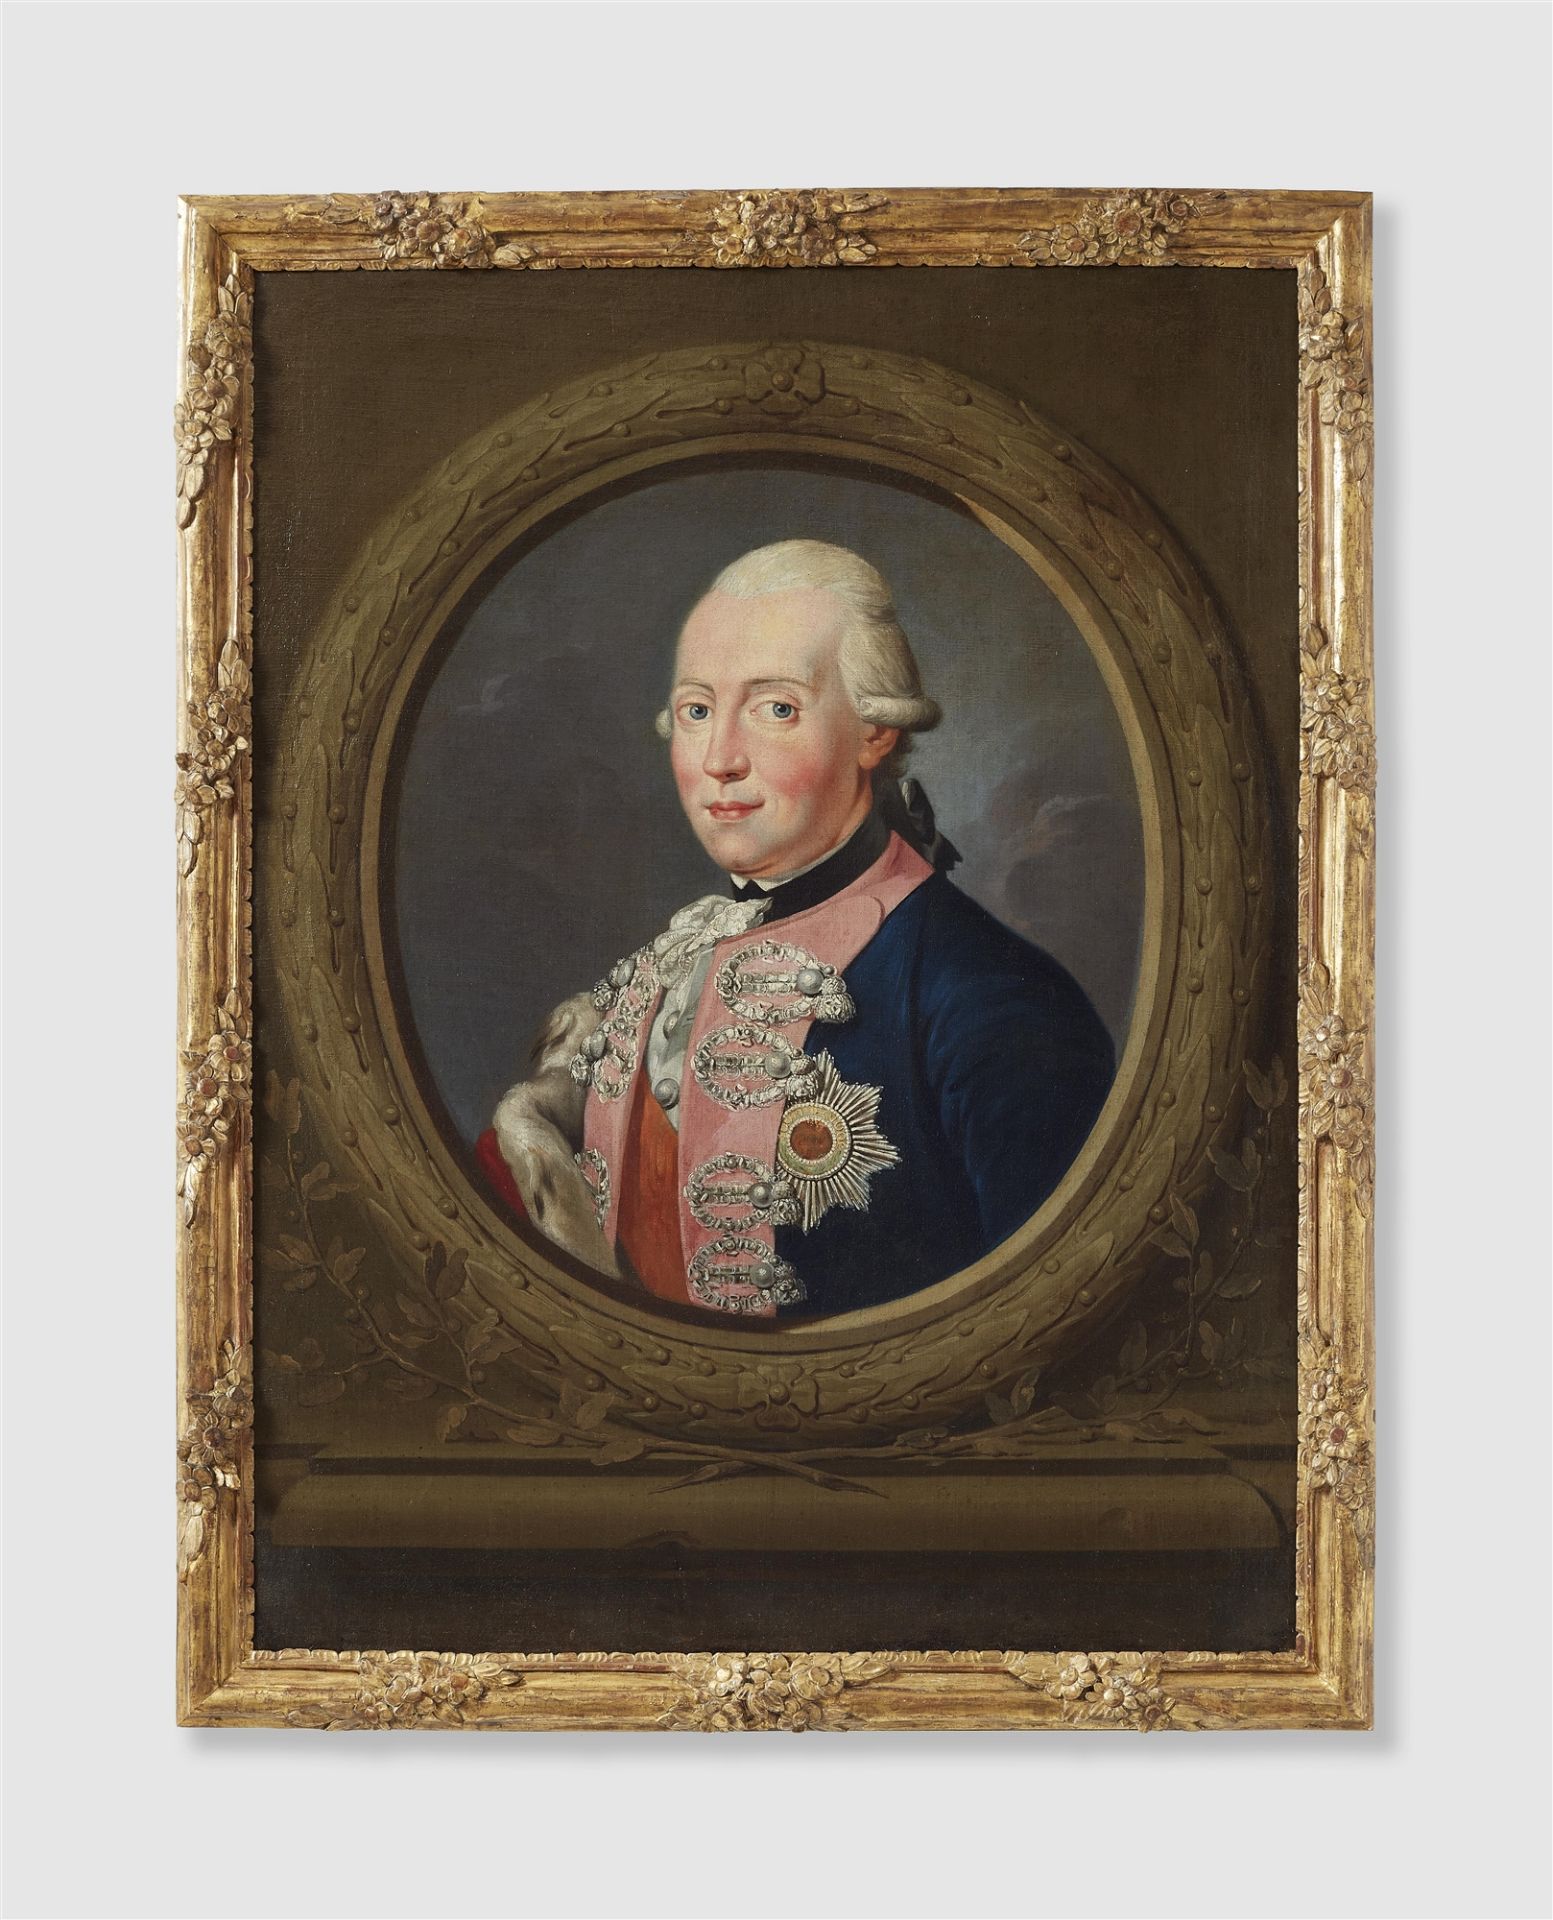 Frédéric Reclam, Portrait of Frederick the Great (1712 - 1786), Portrait of Friedrich Wilhelm II (17